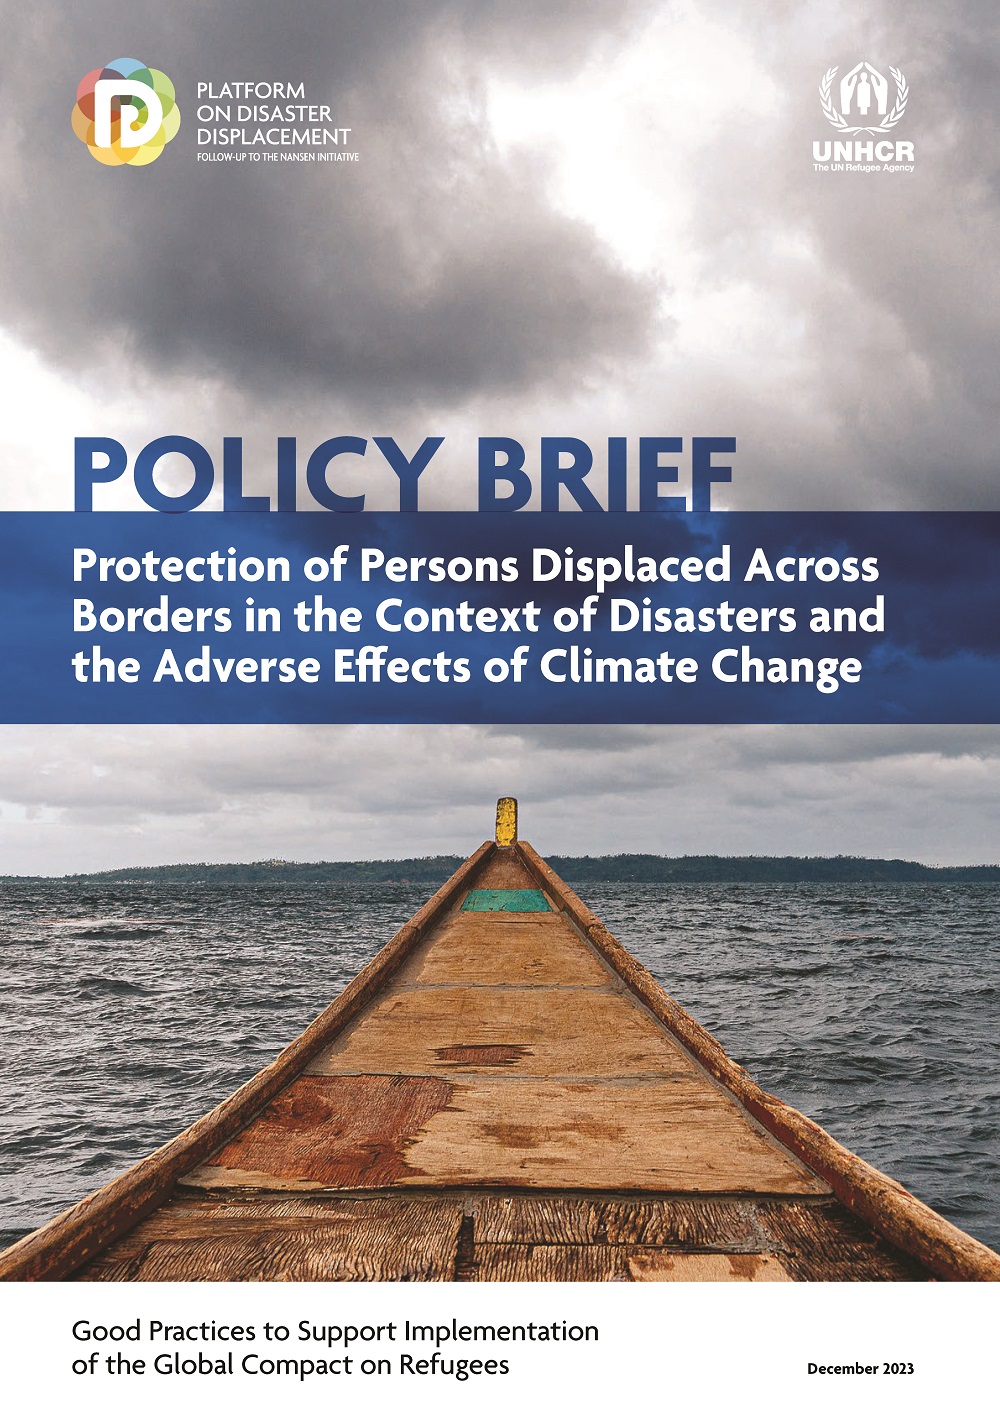 PDD/UNHCR policy brief